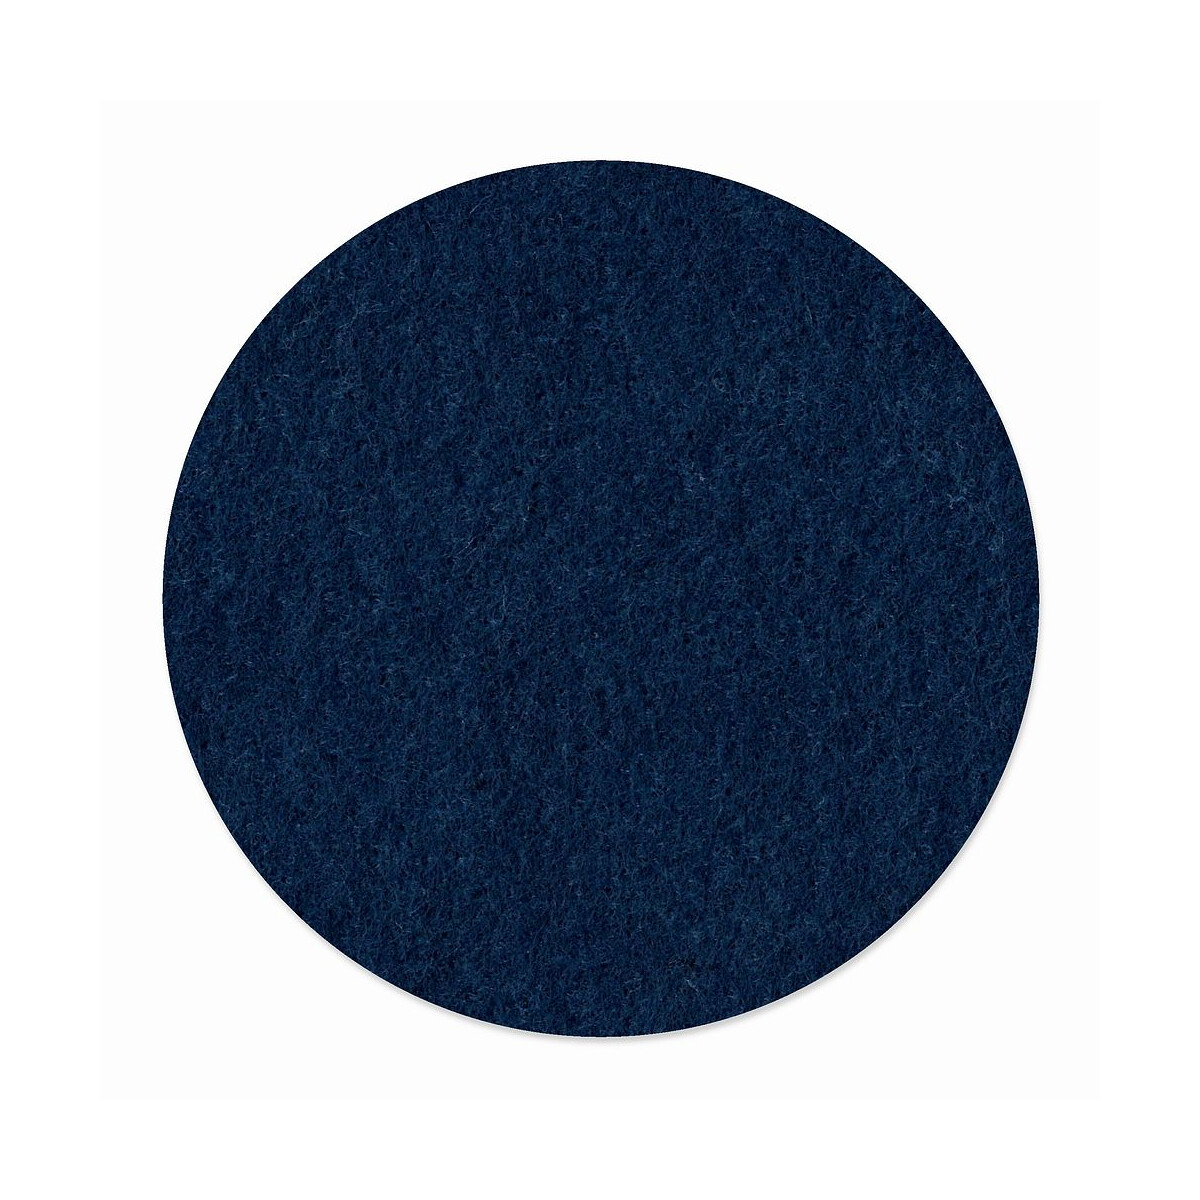 1 x FILZ Untersetzer Rund 11 cm - nachtblau